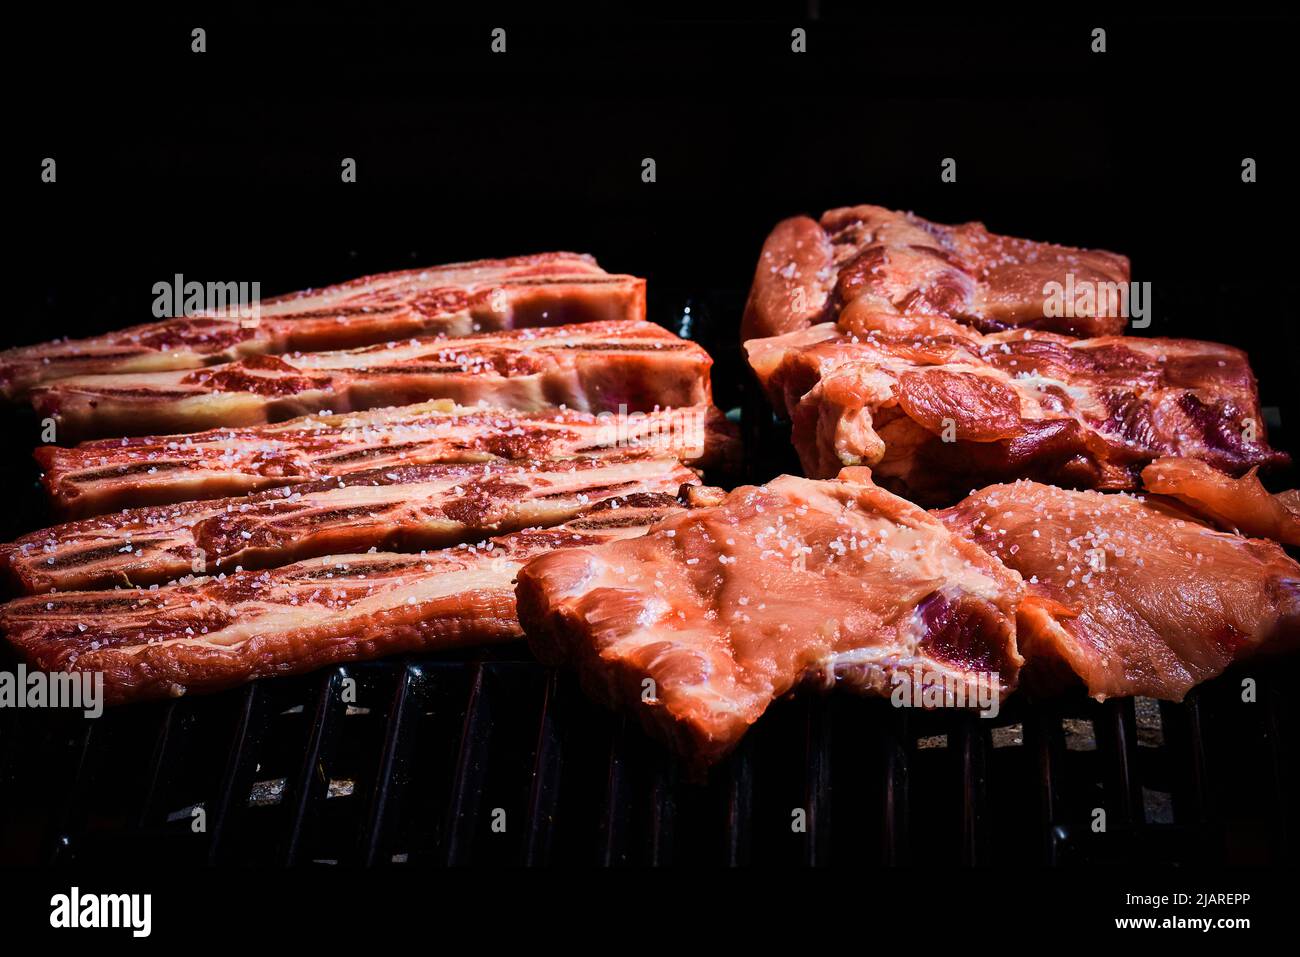 Côtes de bœuf et côtes de porc fraîchement posées sur le barbecue pour commencer à griller Banque D'Images